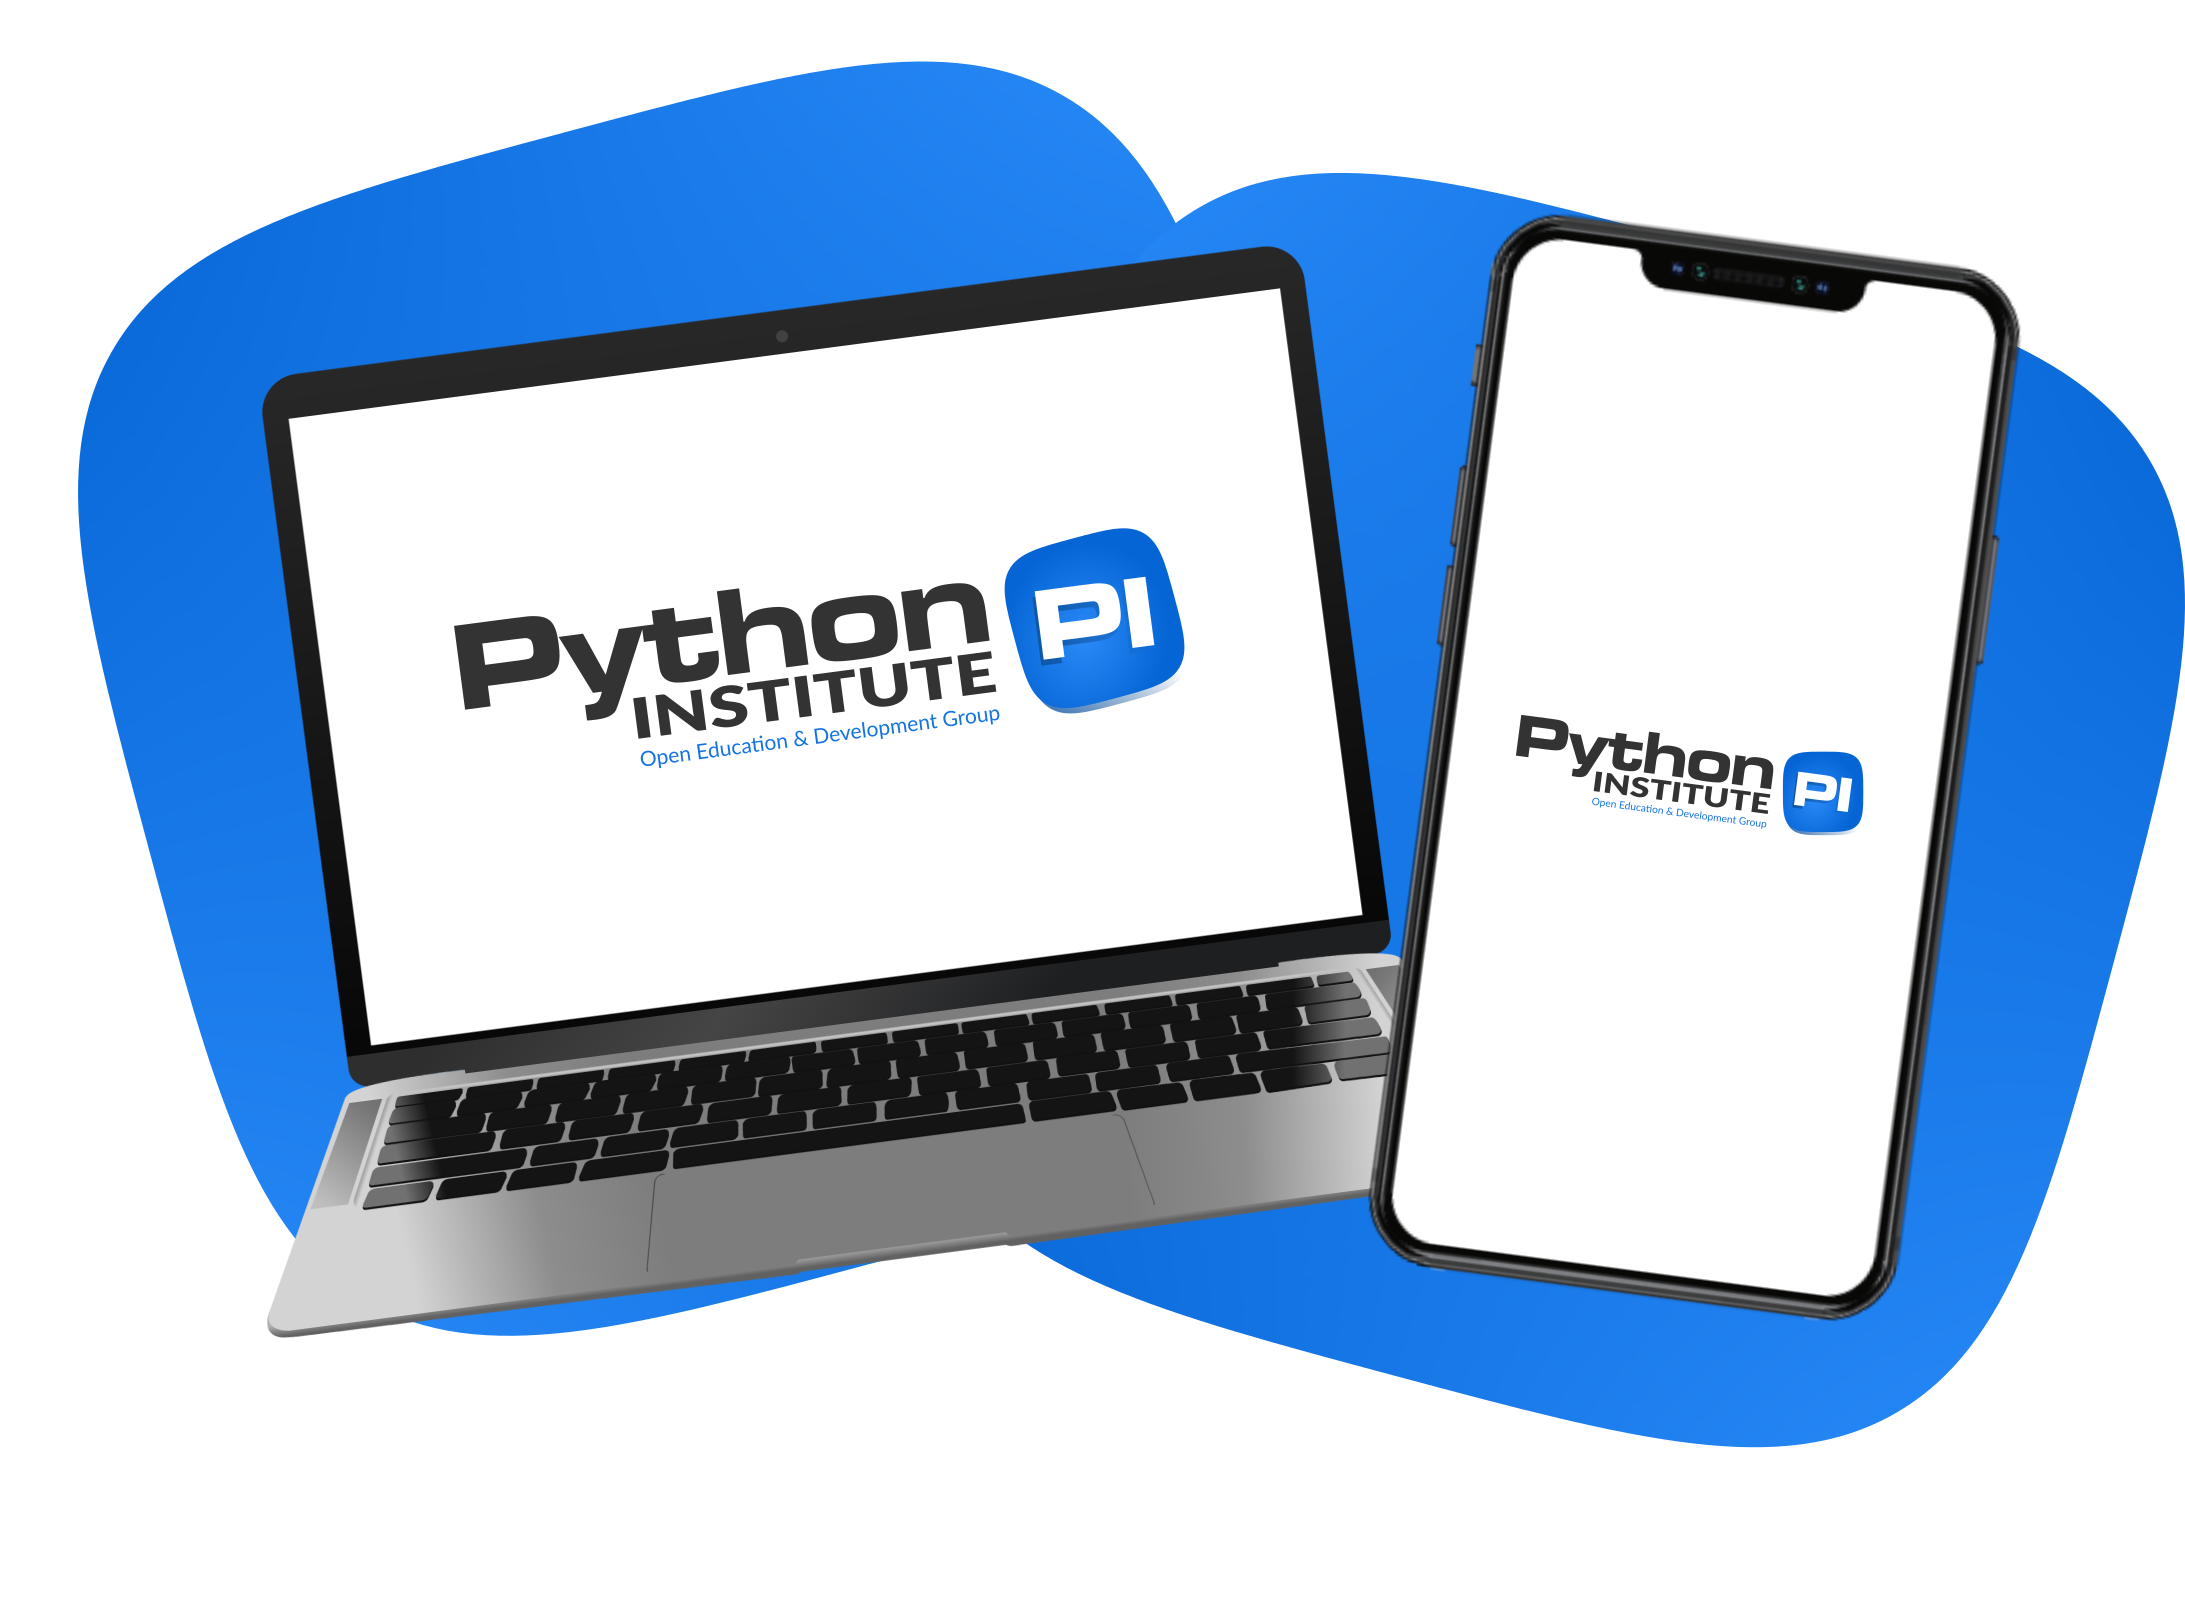 Python Institute - PROGRAM YOUR FUTURE